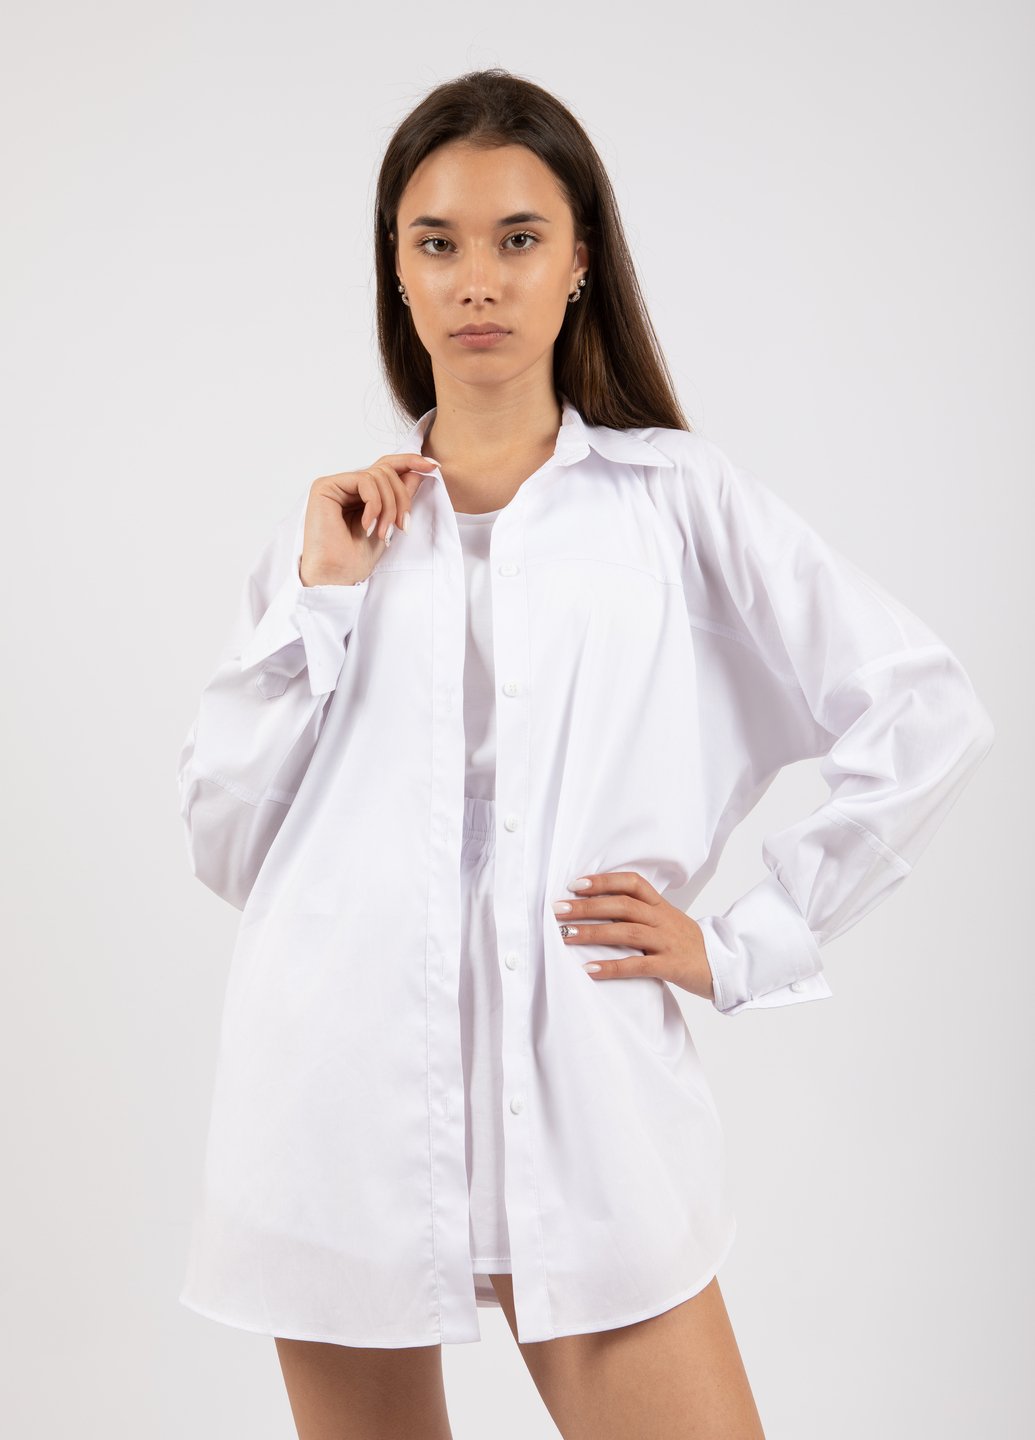 Купить Оверсайз хлопковая рубашка женская Merlini Белиз 200000035 - Белый, 42-44 в интернет-магазине